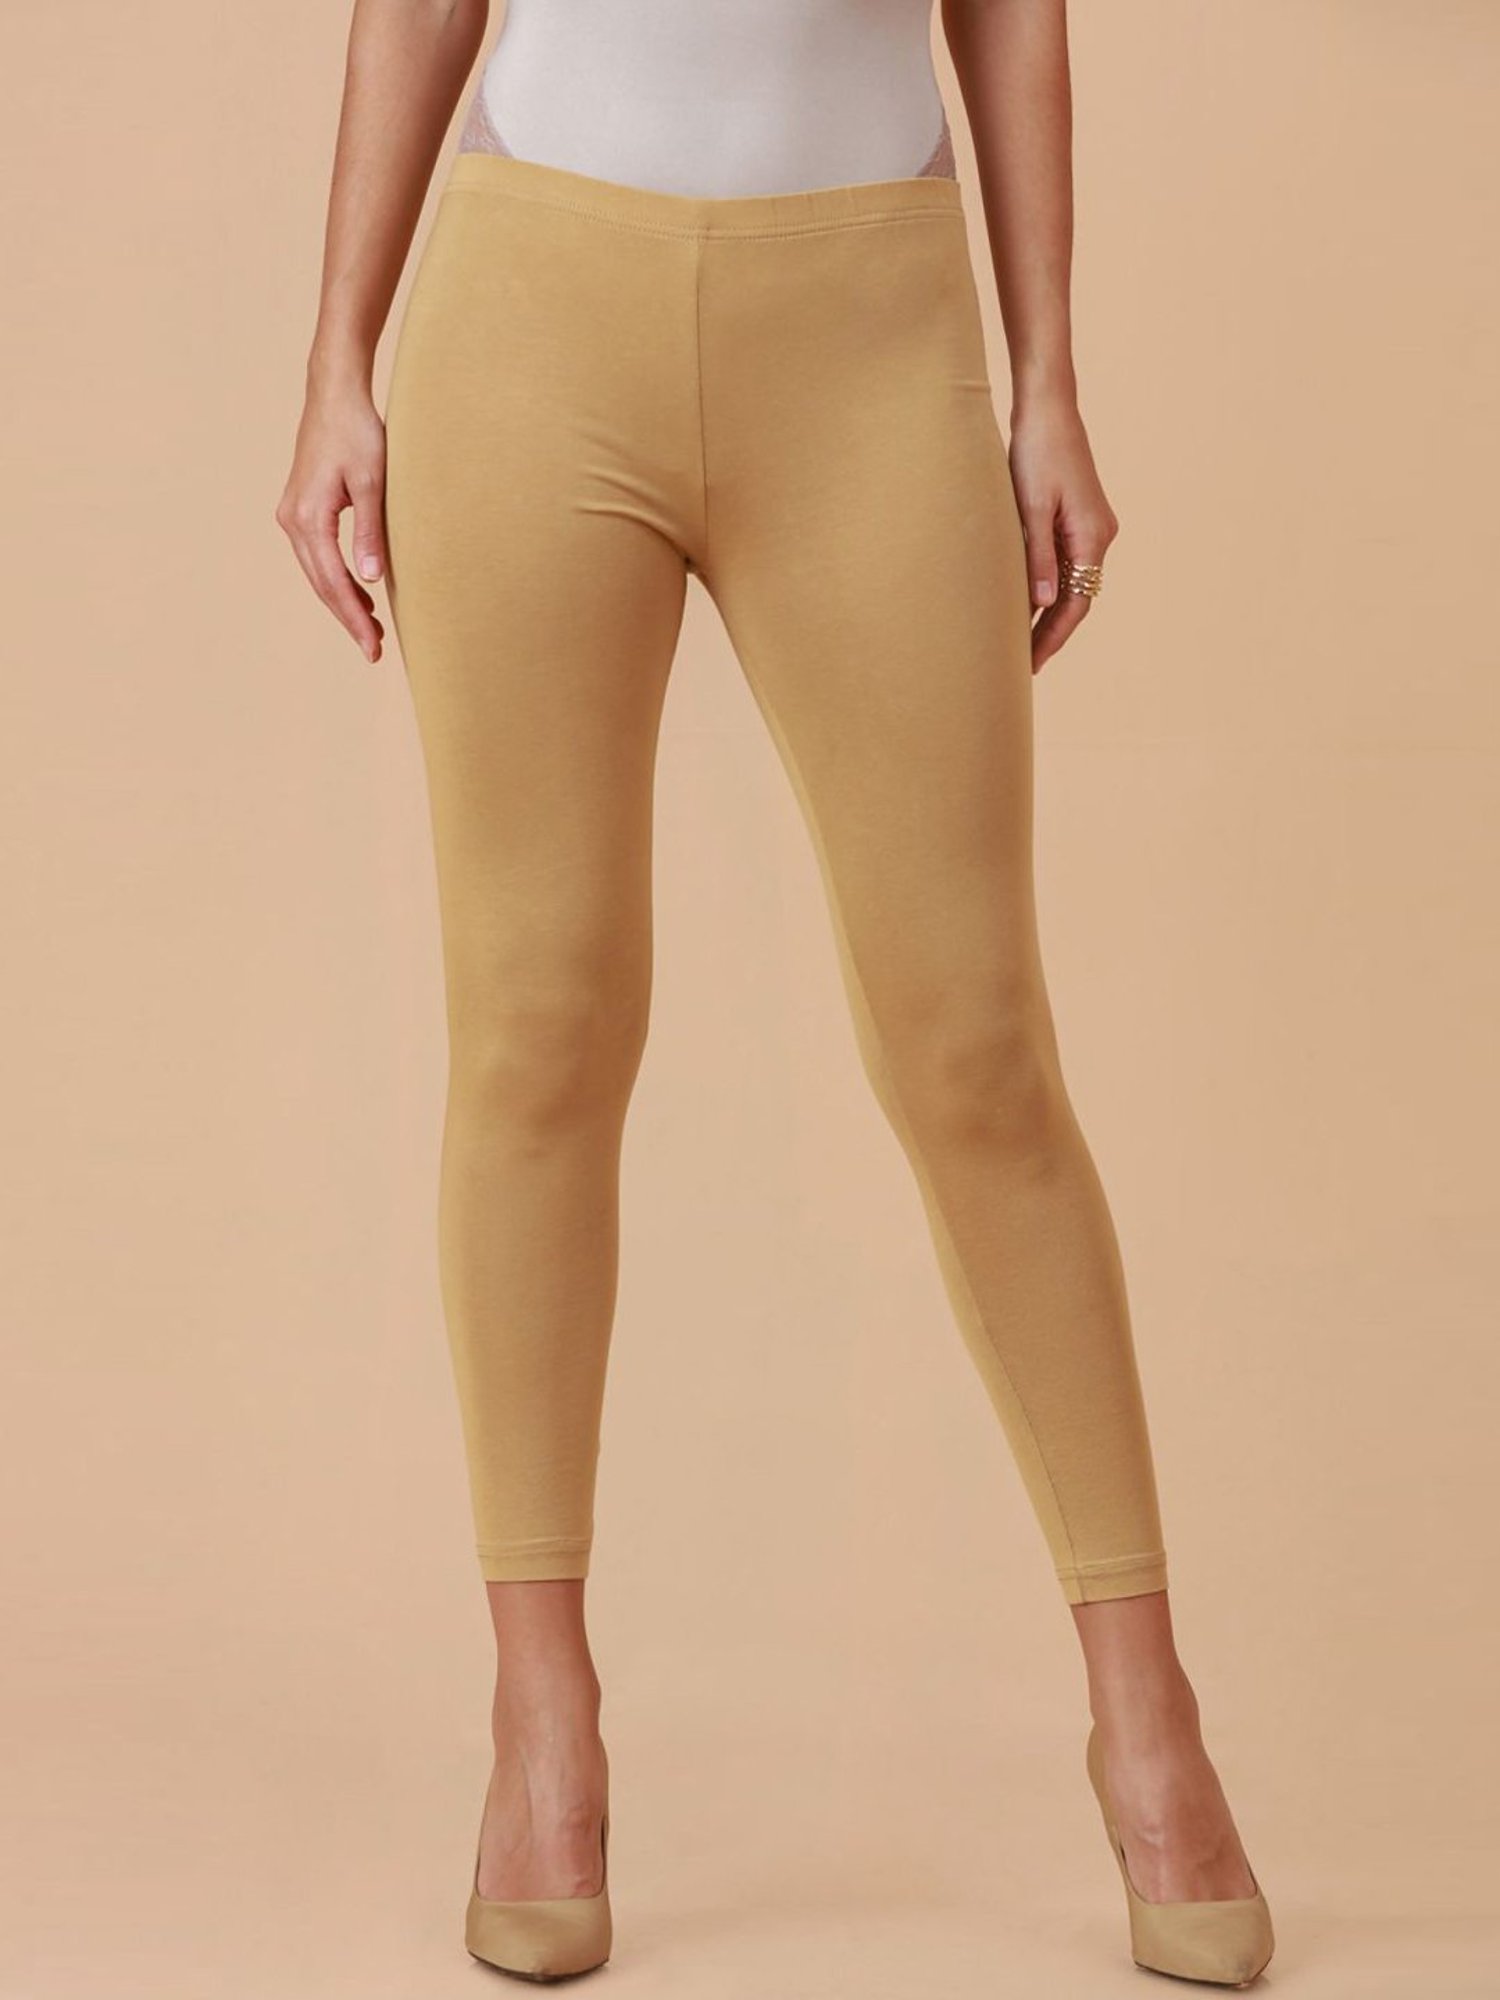 Buy Soch Golden Cotton Mid Rise Leggings for Women Online @ Tata CLiQ